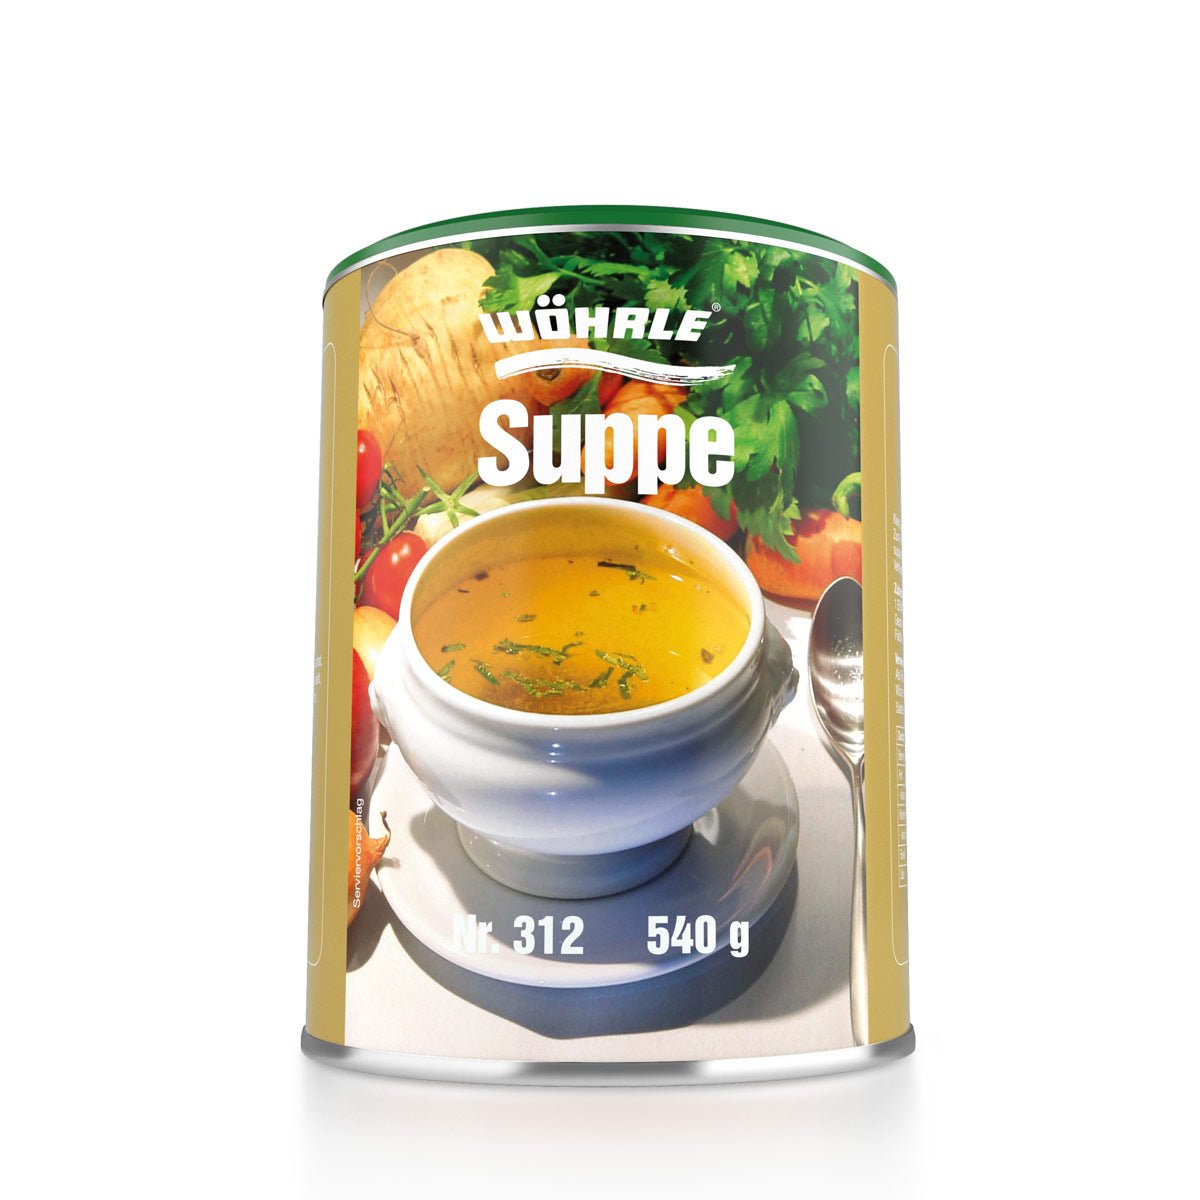 Suppe ♥ - Wöhrle - S' Beschde für dahoim!